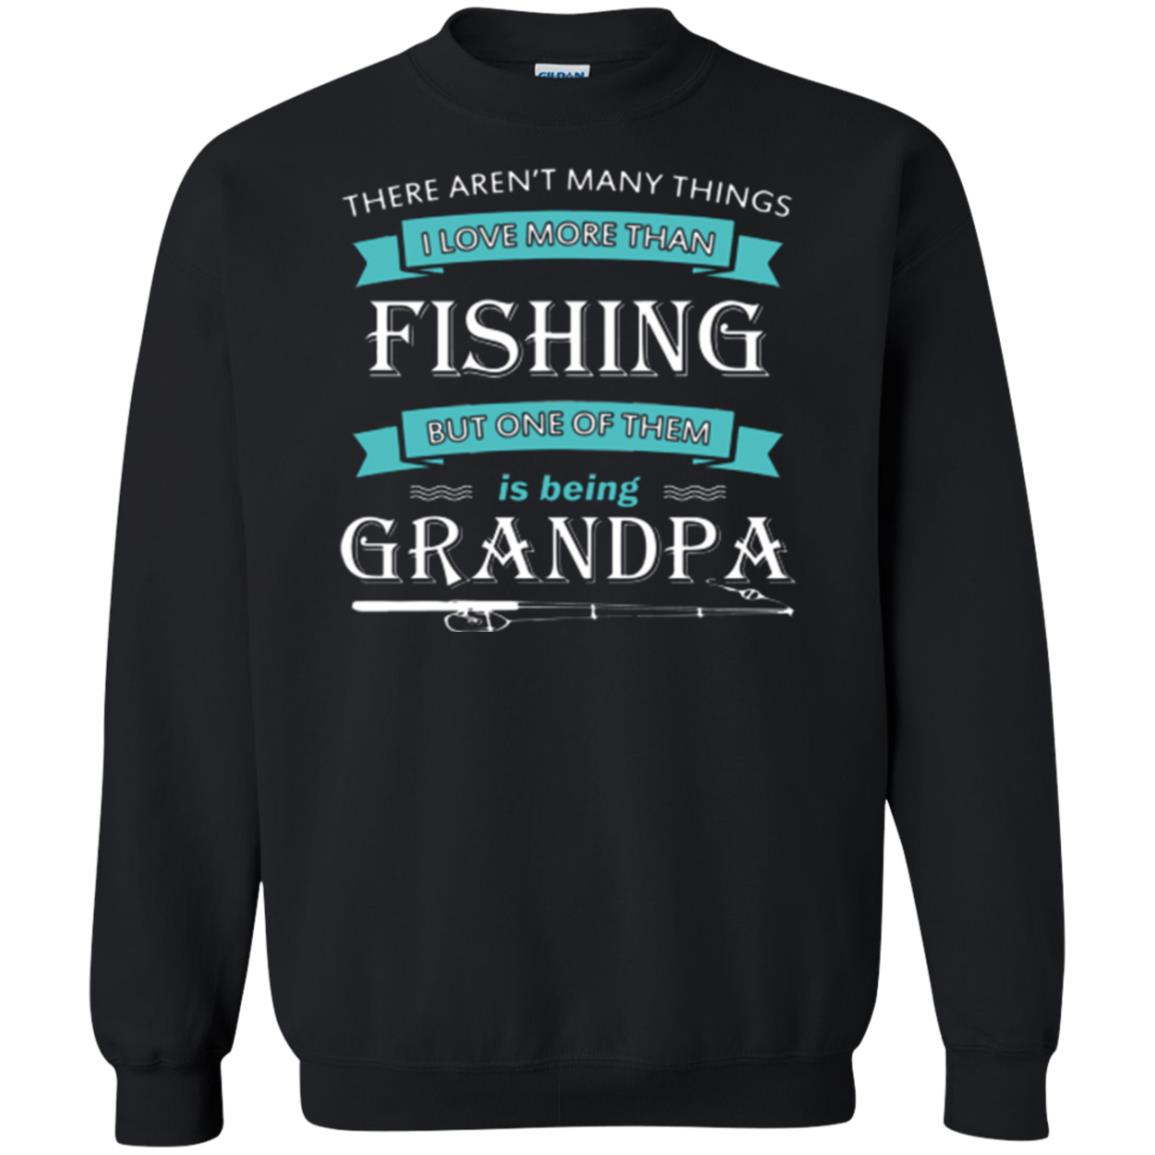 Grandpa Fishing Shirt - 10% Off - FavorMerch